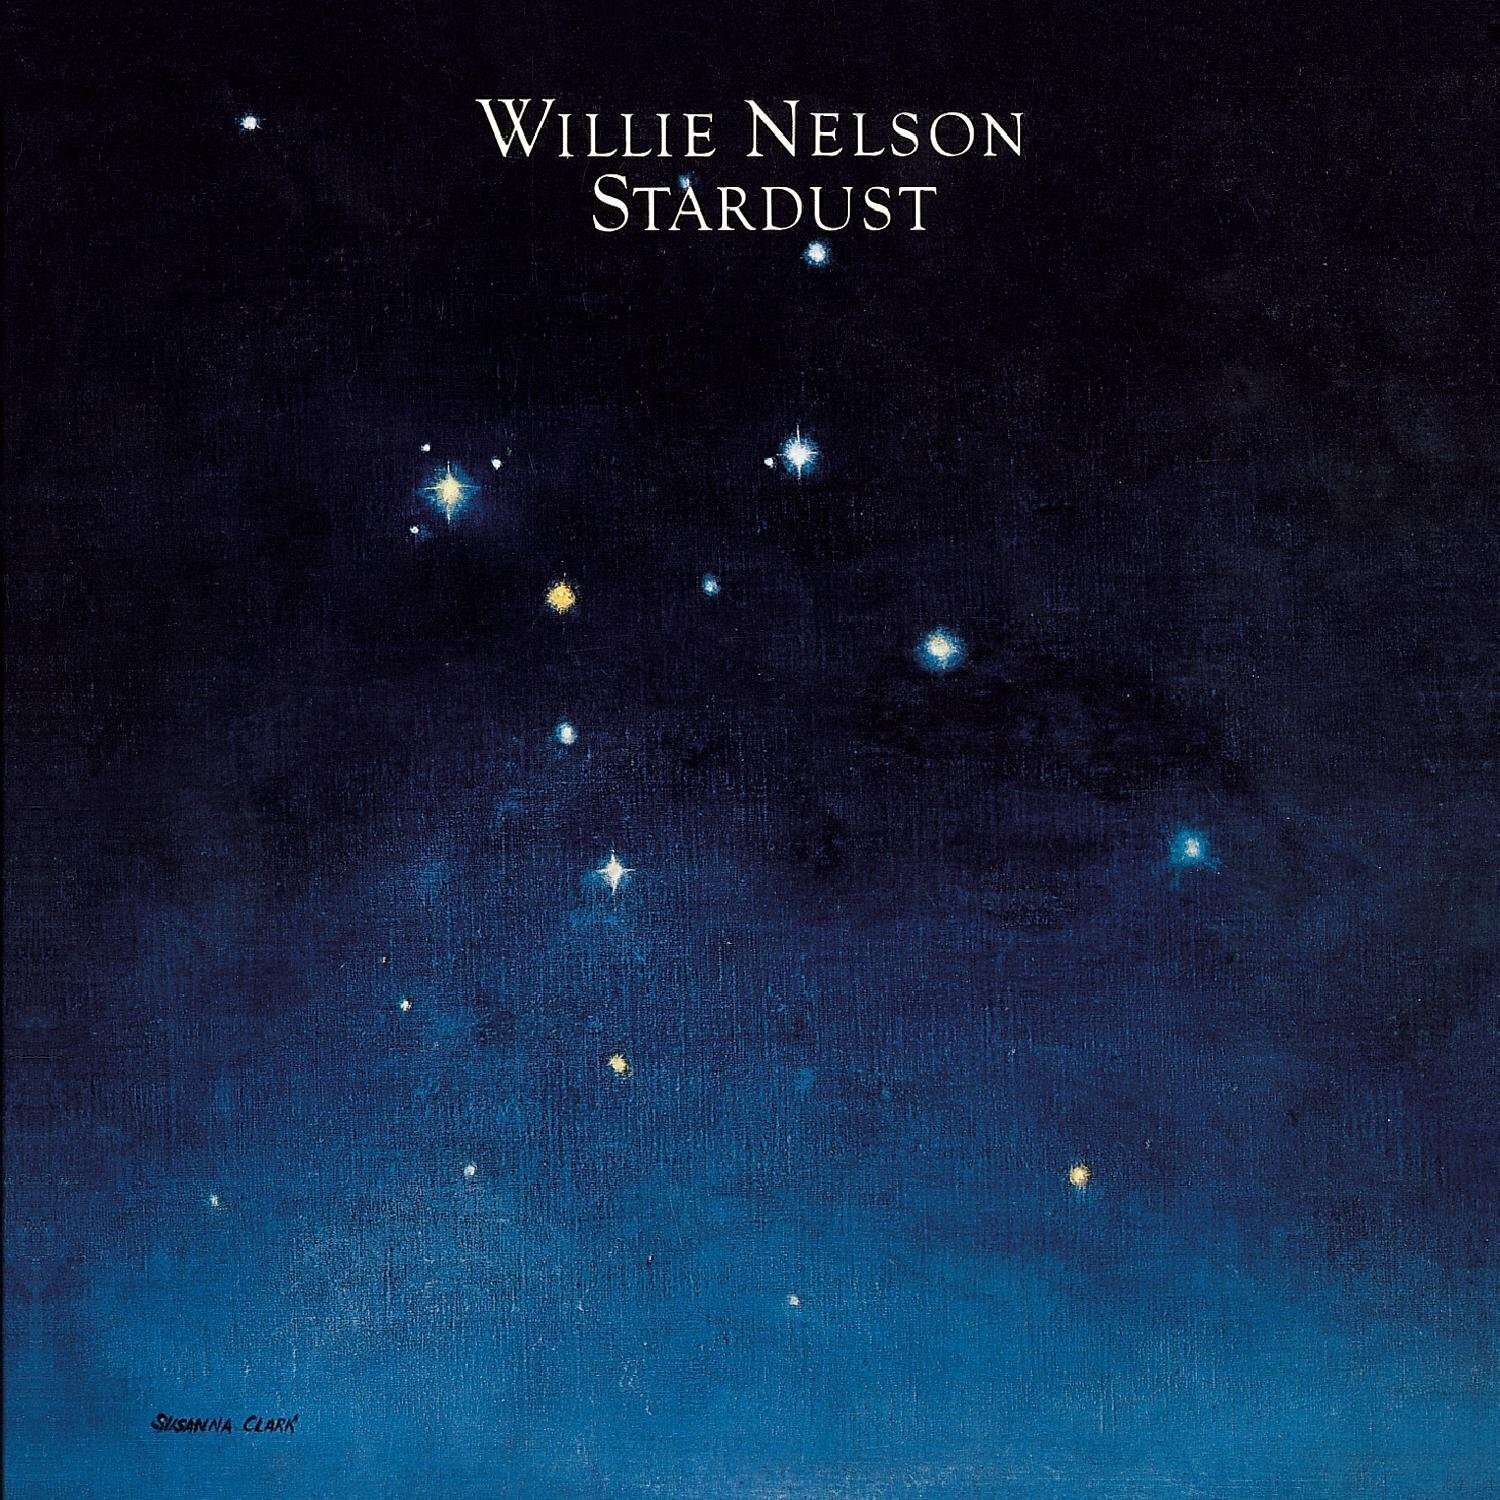 Willie Nelson - Stardust (2 LP) (200g) (45 RPM)